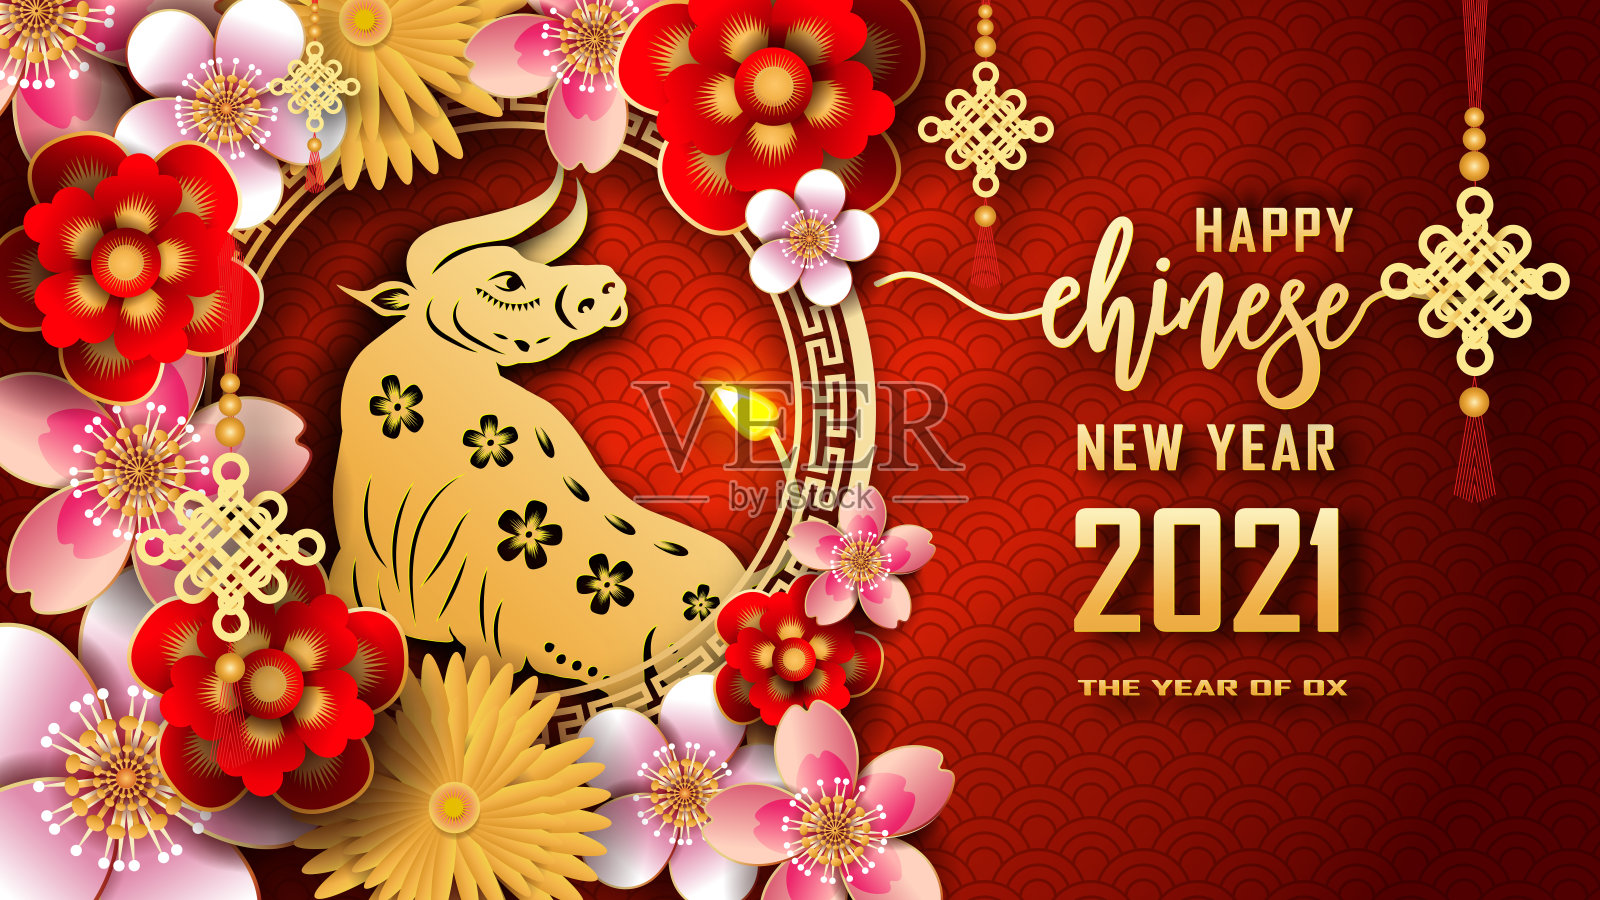 2021年春节快乐。牛年。中国新年吉祥贺卡图形设计背景和壁纸。红色和金色的纸剪梅花花。亚洲文化元素设计模板素材